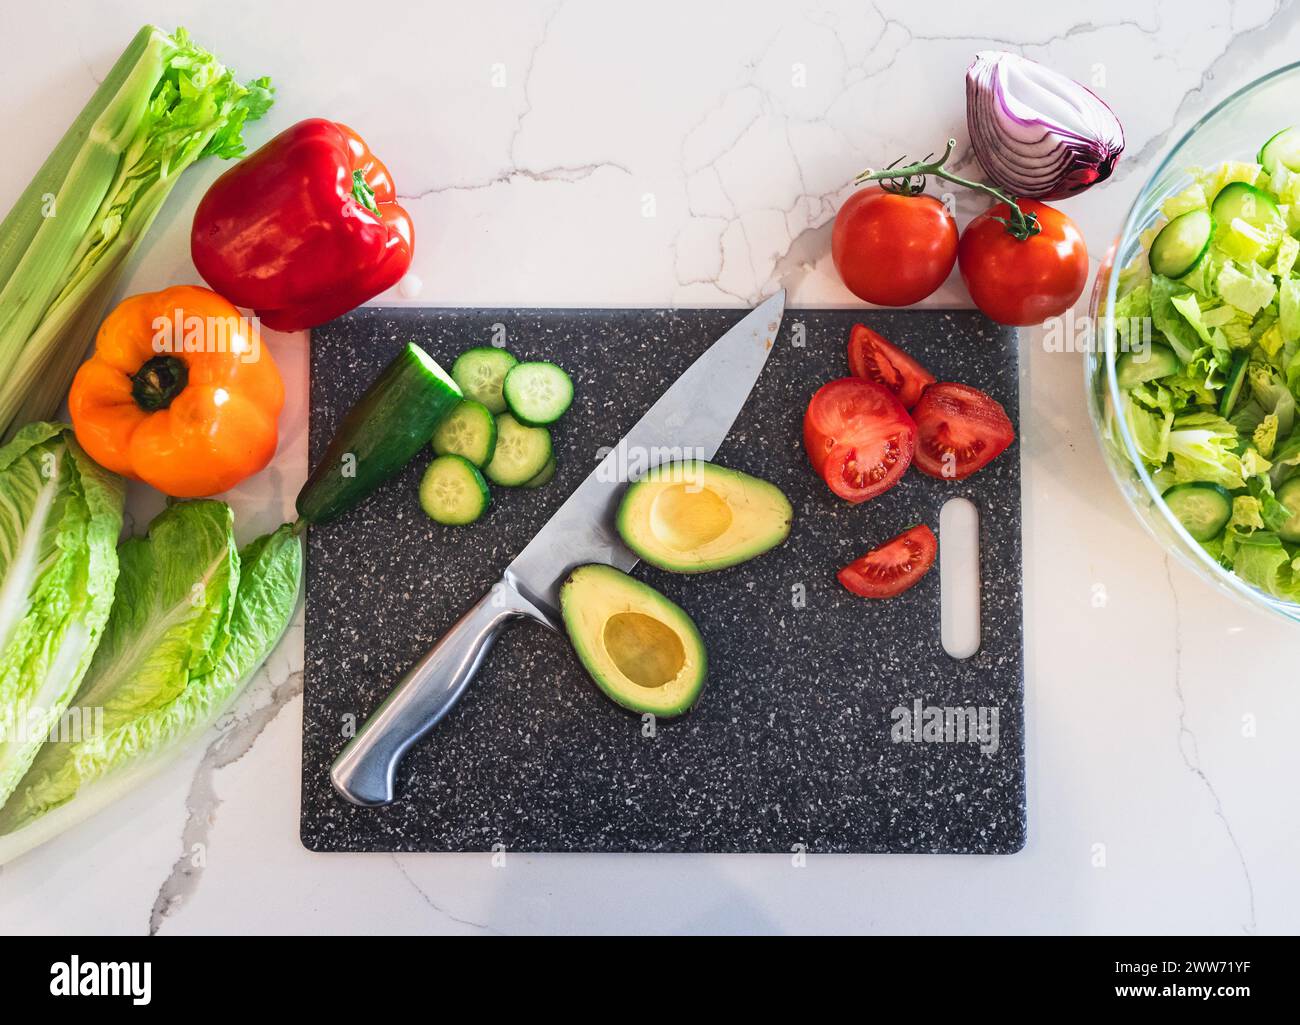 Vue aérienne des légumes hachés sur le comptoir blanc. Banque D'Images